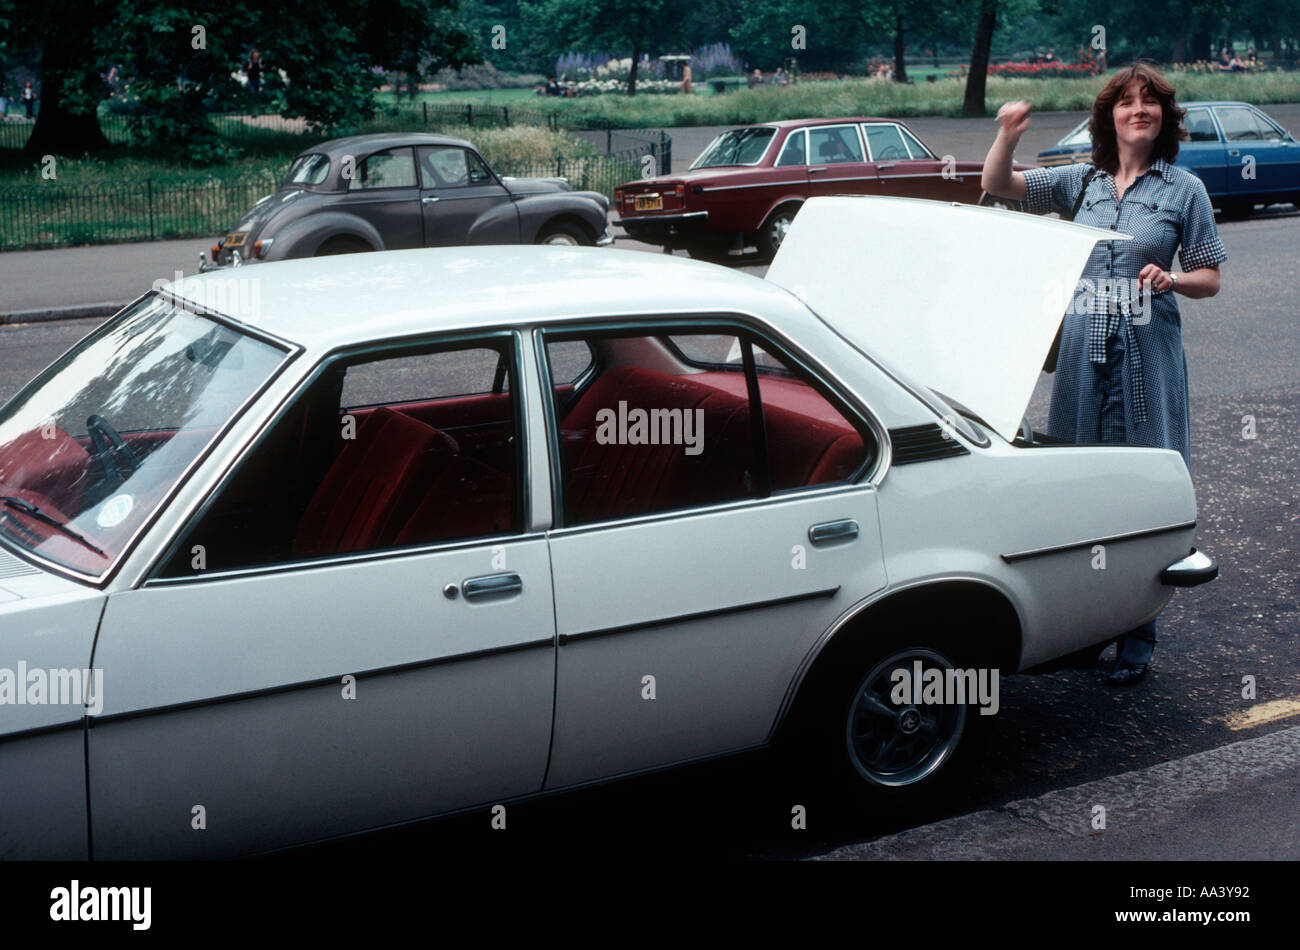 Vauxhall cavalier blanc voiture de 1977 avec une jeune femme d'ouvrir le coffre trunk Banque D'Images